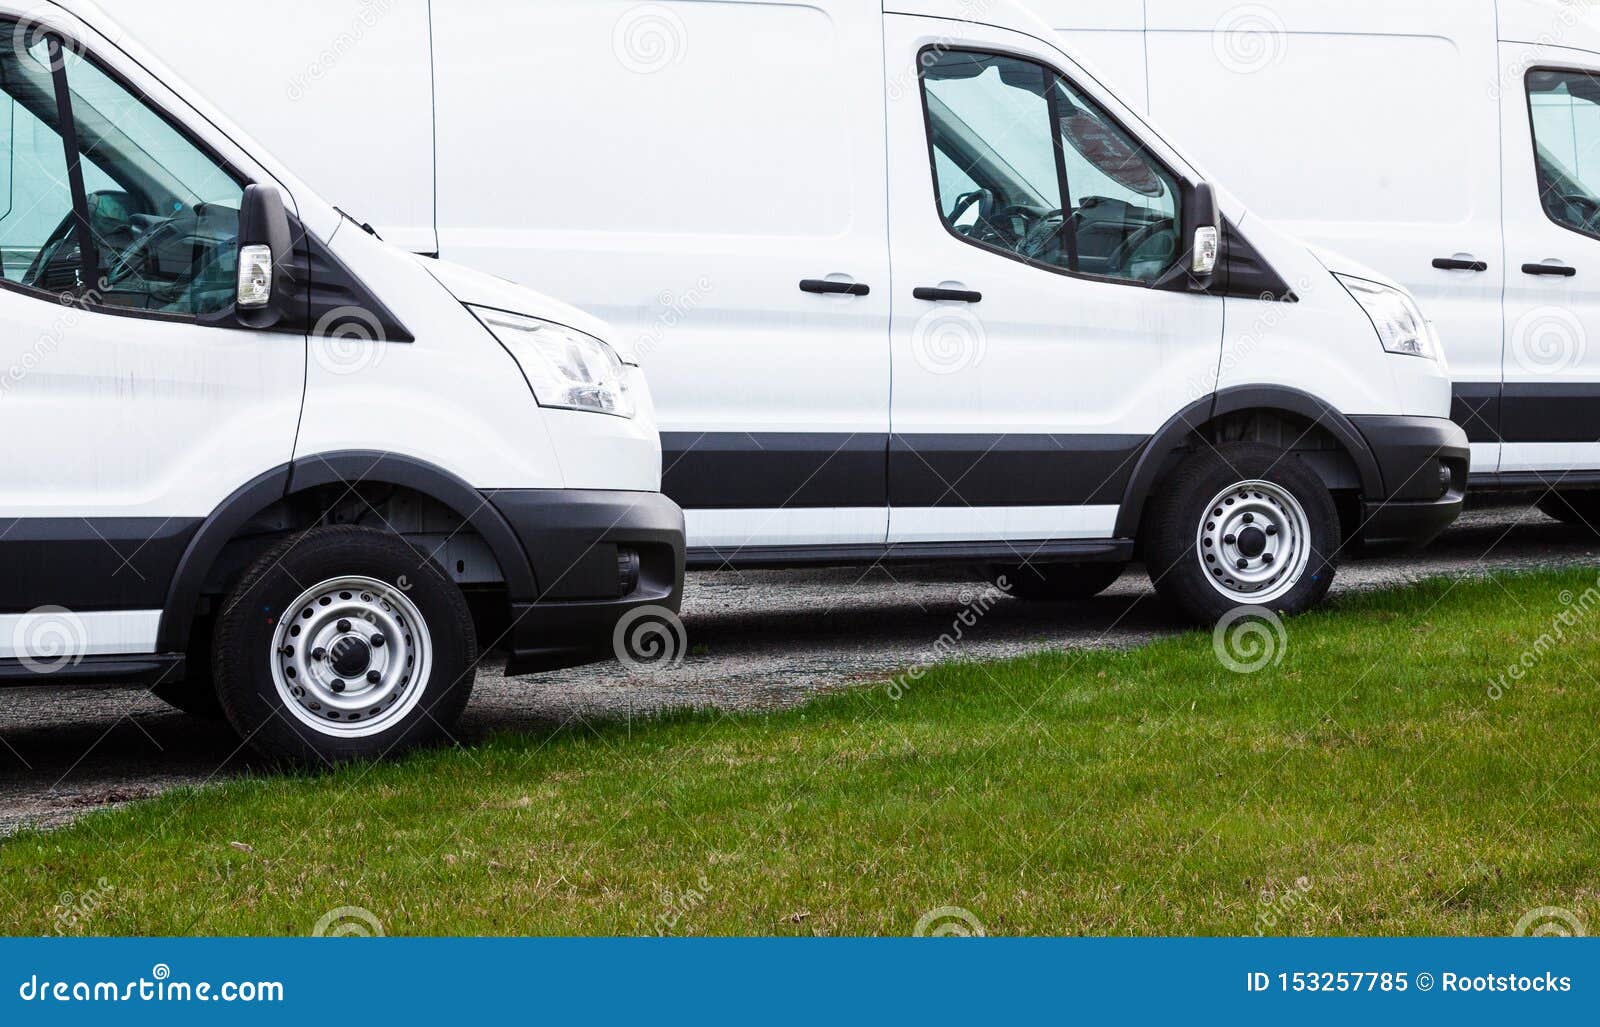 vans for sale dealership